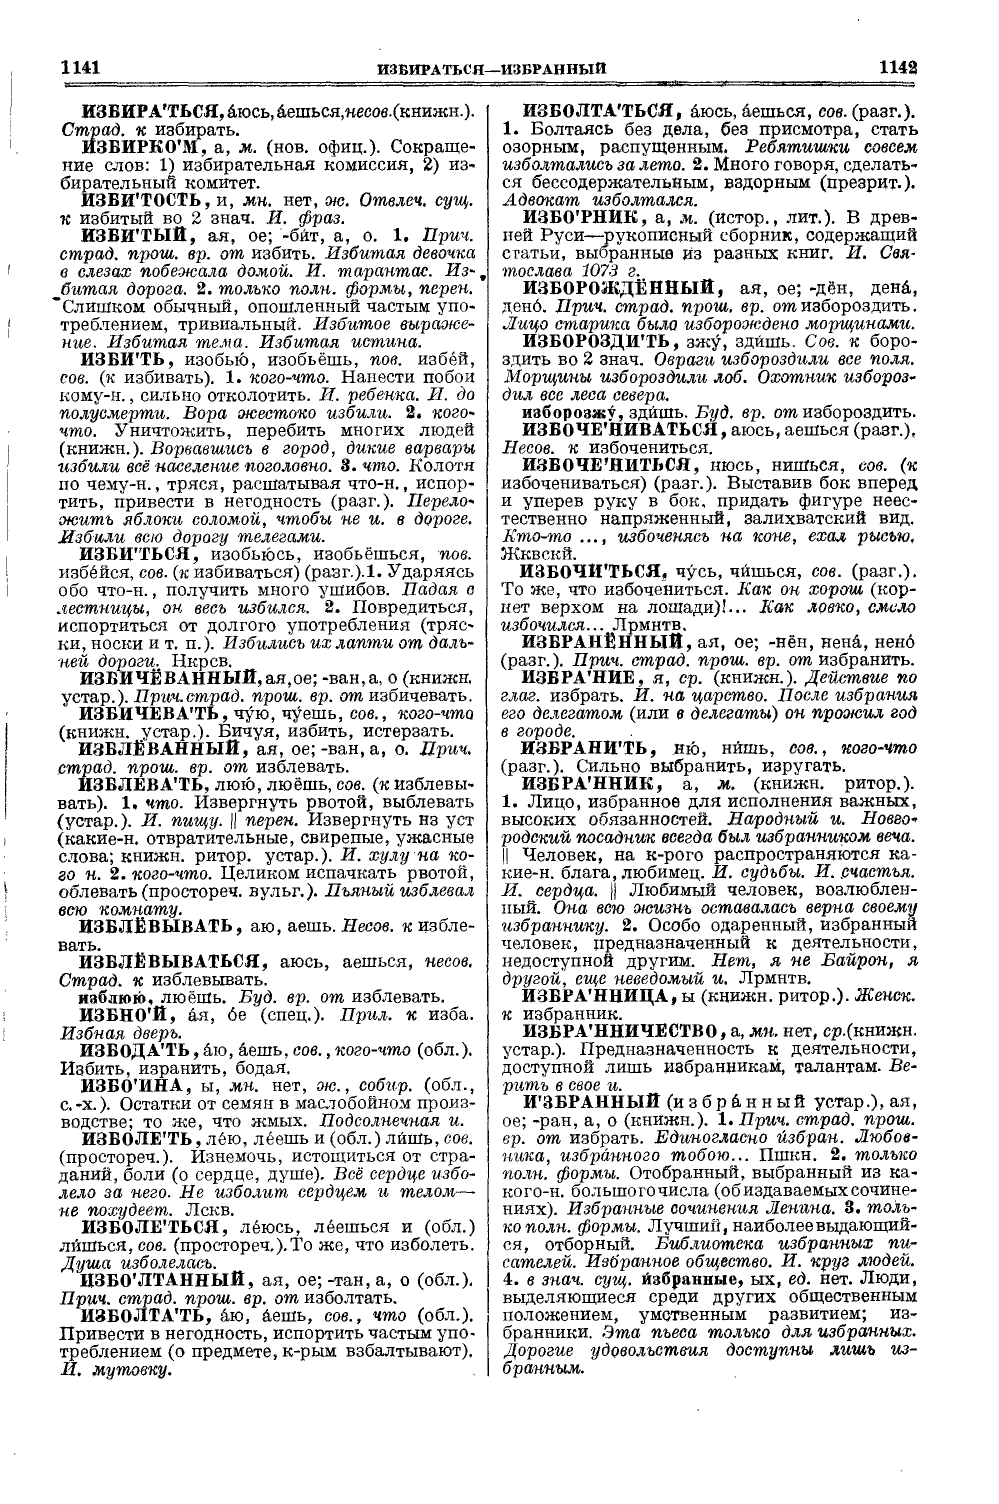 Фотокопия pdf / скан страницы 609 толкового словаря Ушакова (том 1)